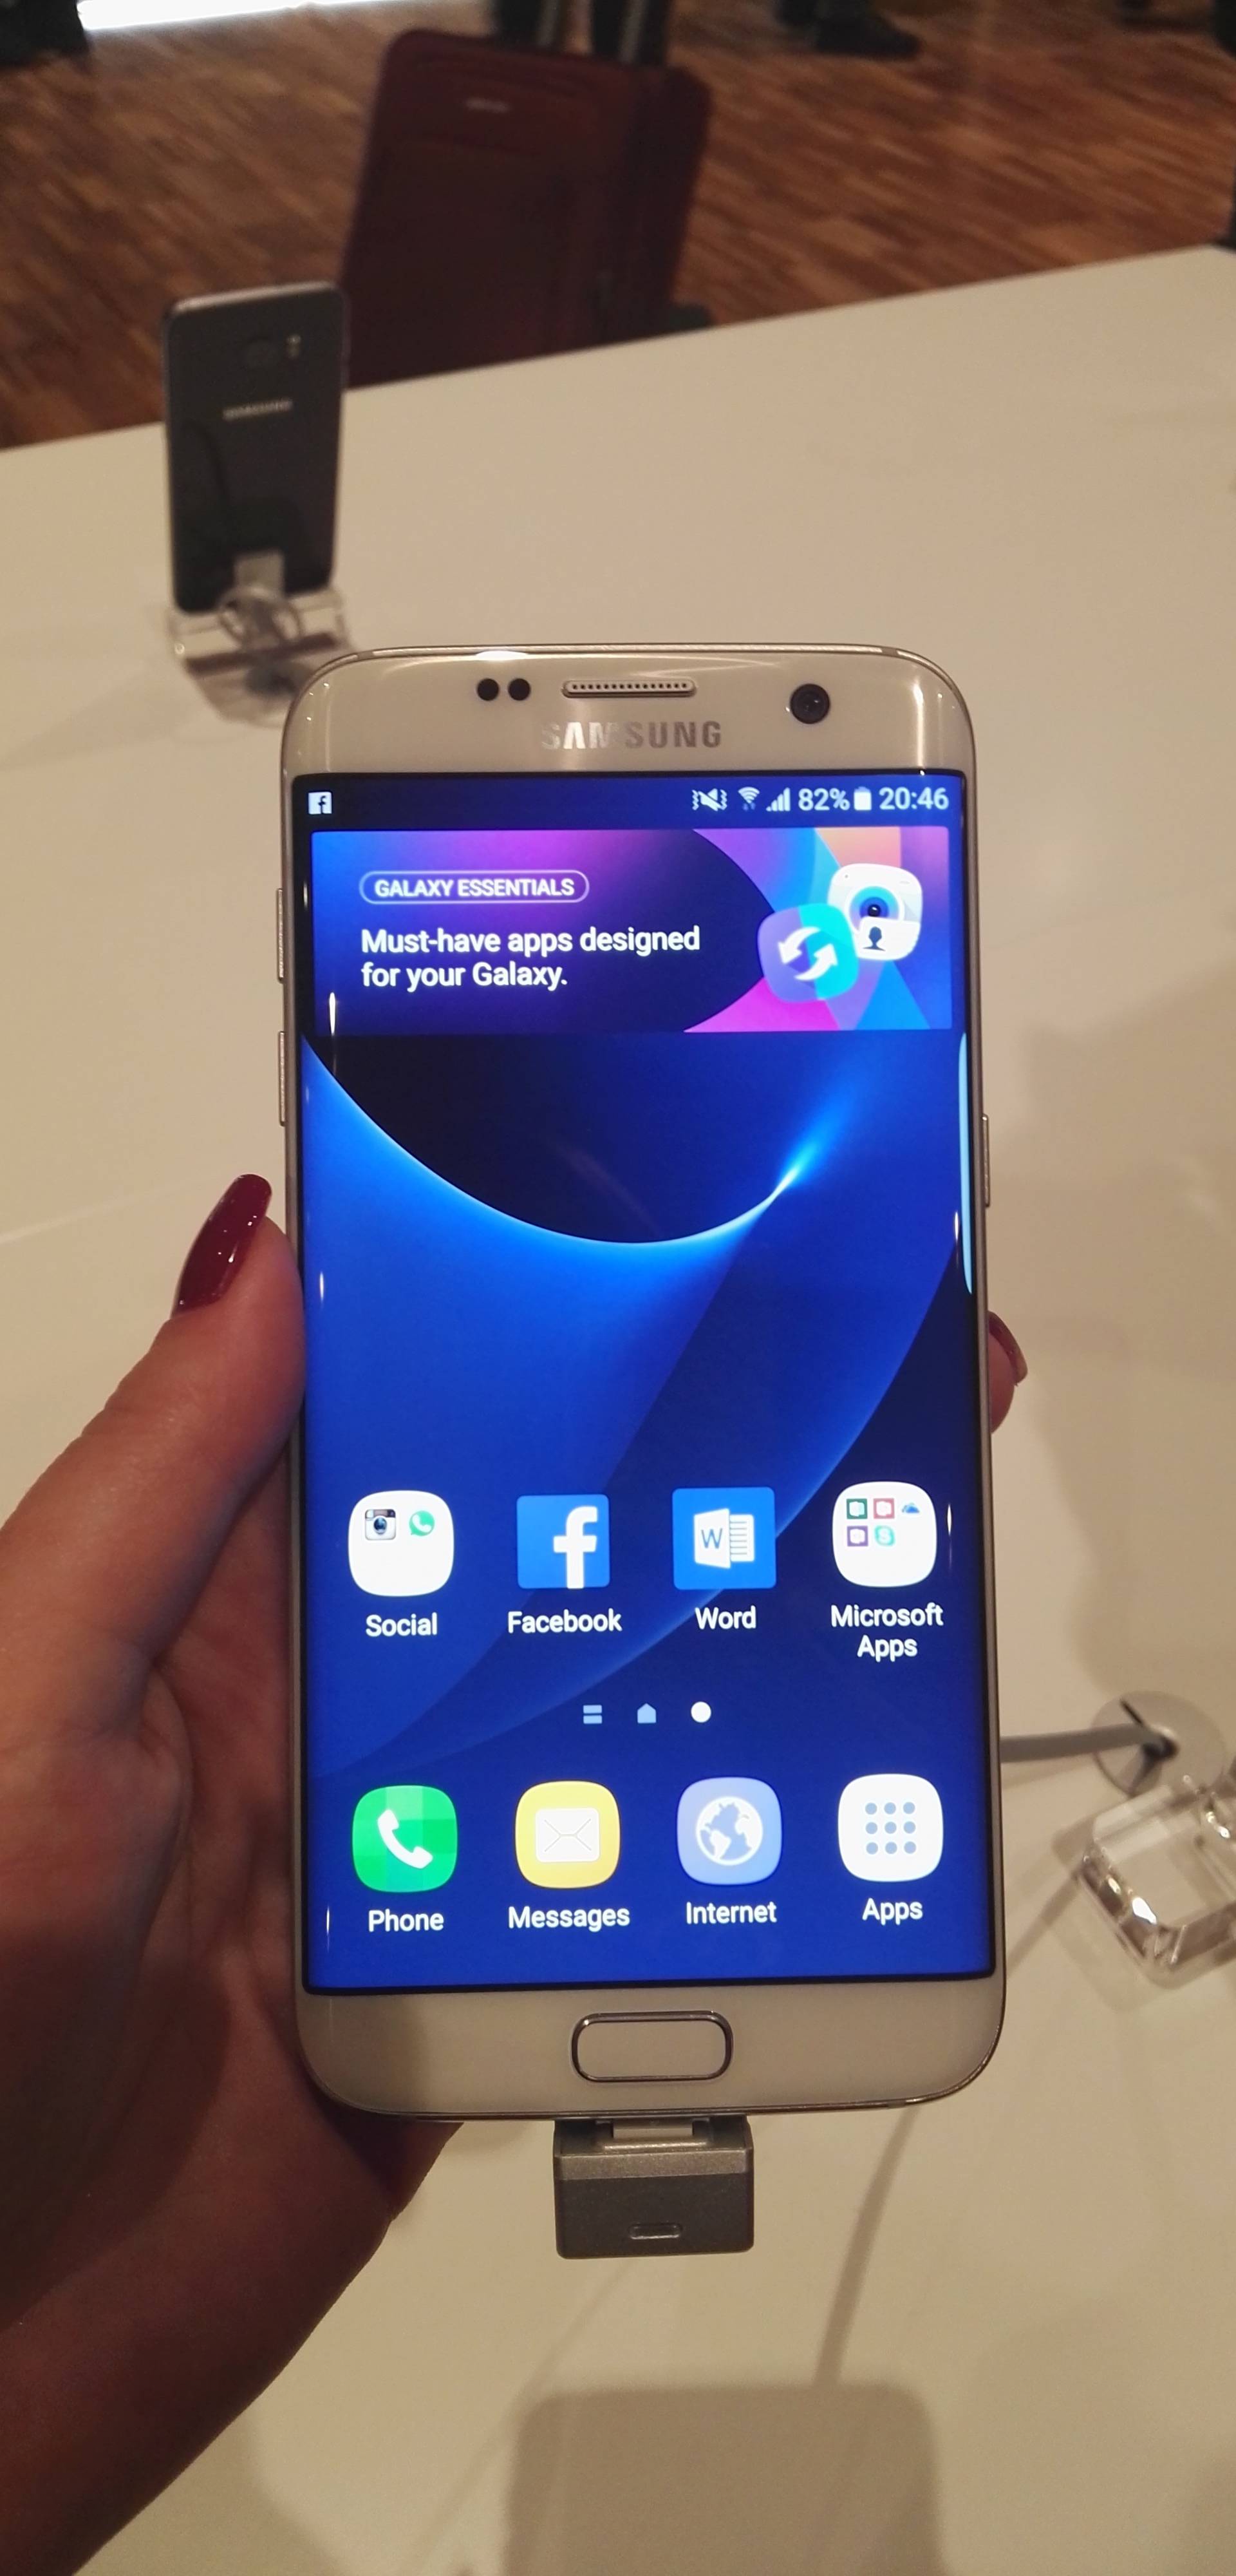 Je li bolje kupiti Galaxy S7 odmah ili pričekati iPhone 7?